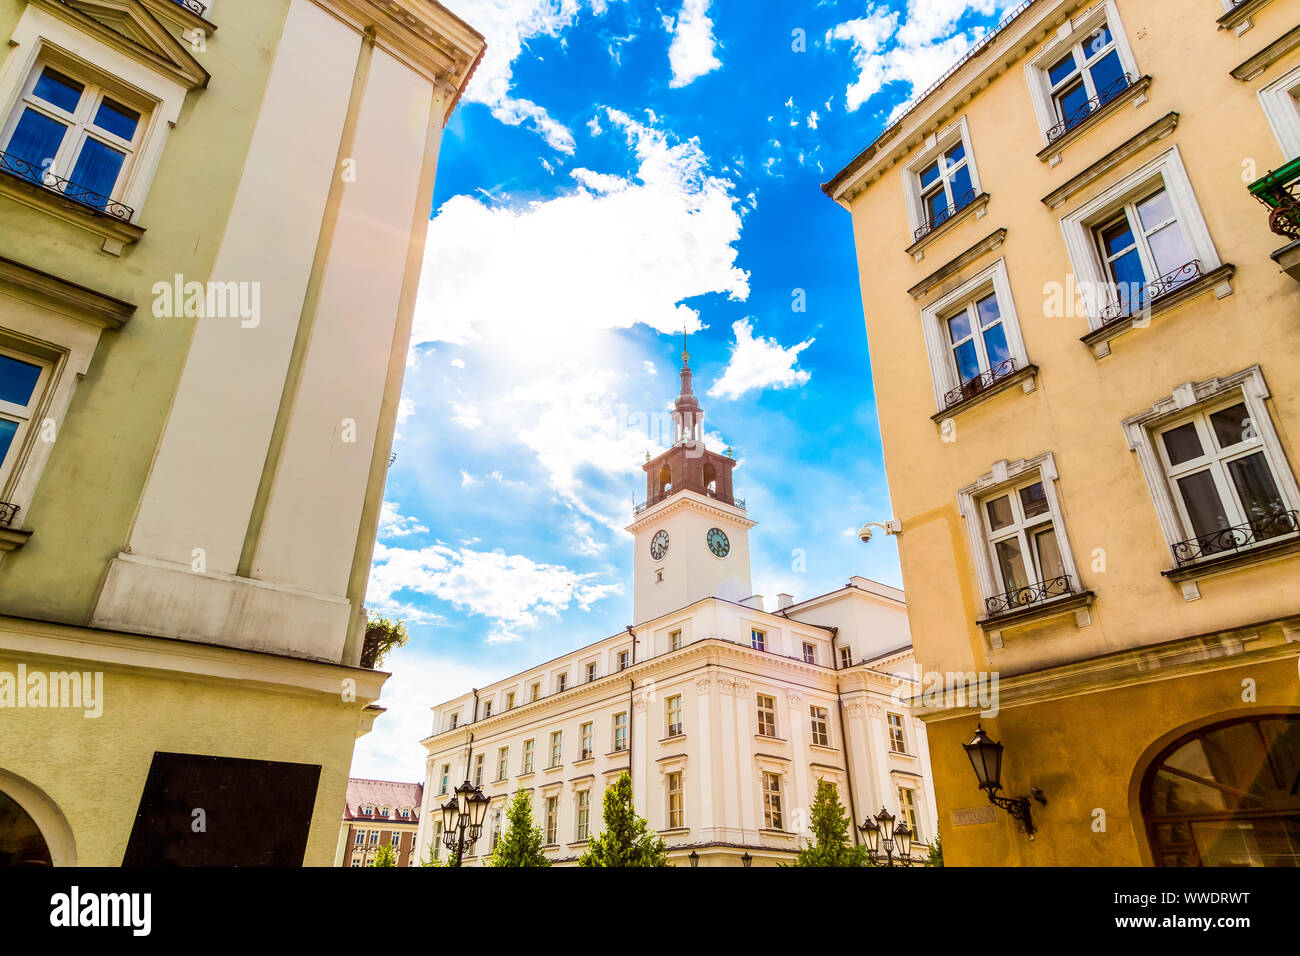 La place de la vieille ville, avec la mairie de ville de Kalisz en Pologne Banque D'Images